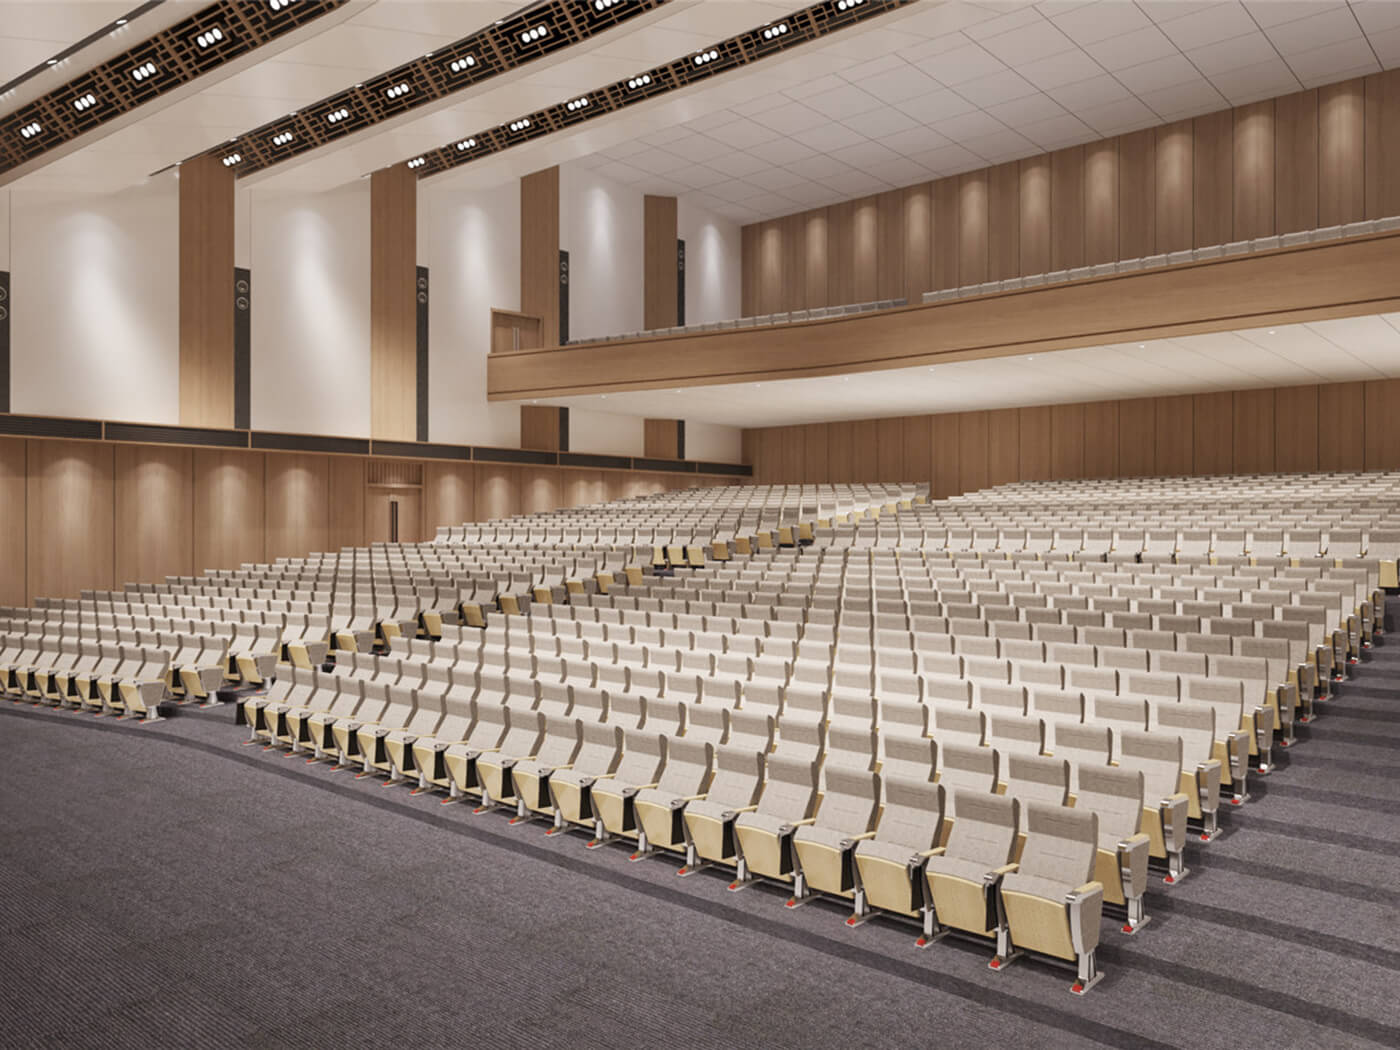 ကျော်ကြားသောထုတ်လုပ်သူ102 ထံမှ Auditorium ထိုင်ခုံနှင့်အတူစတိုင်နှင့်သက်သောင့်သက်သာအတွေ့အကြုံကိုခံစားပါ။